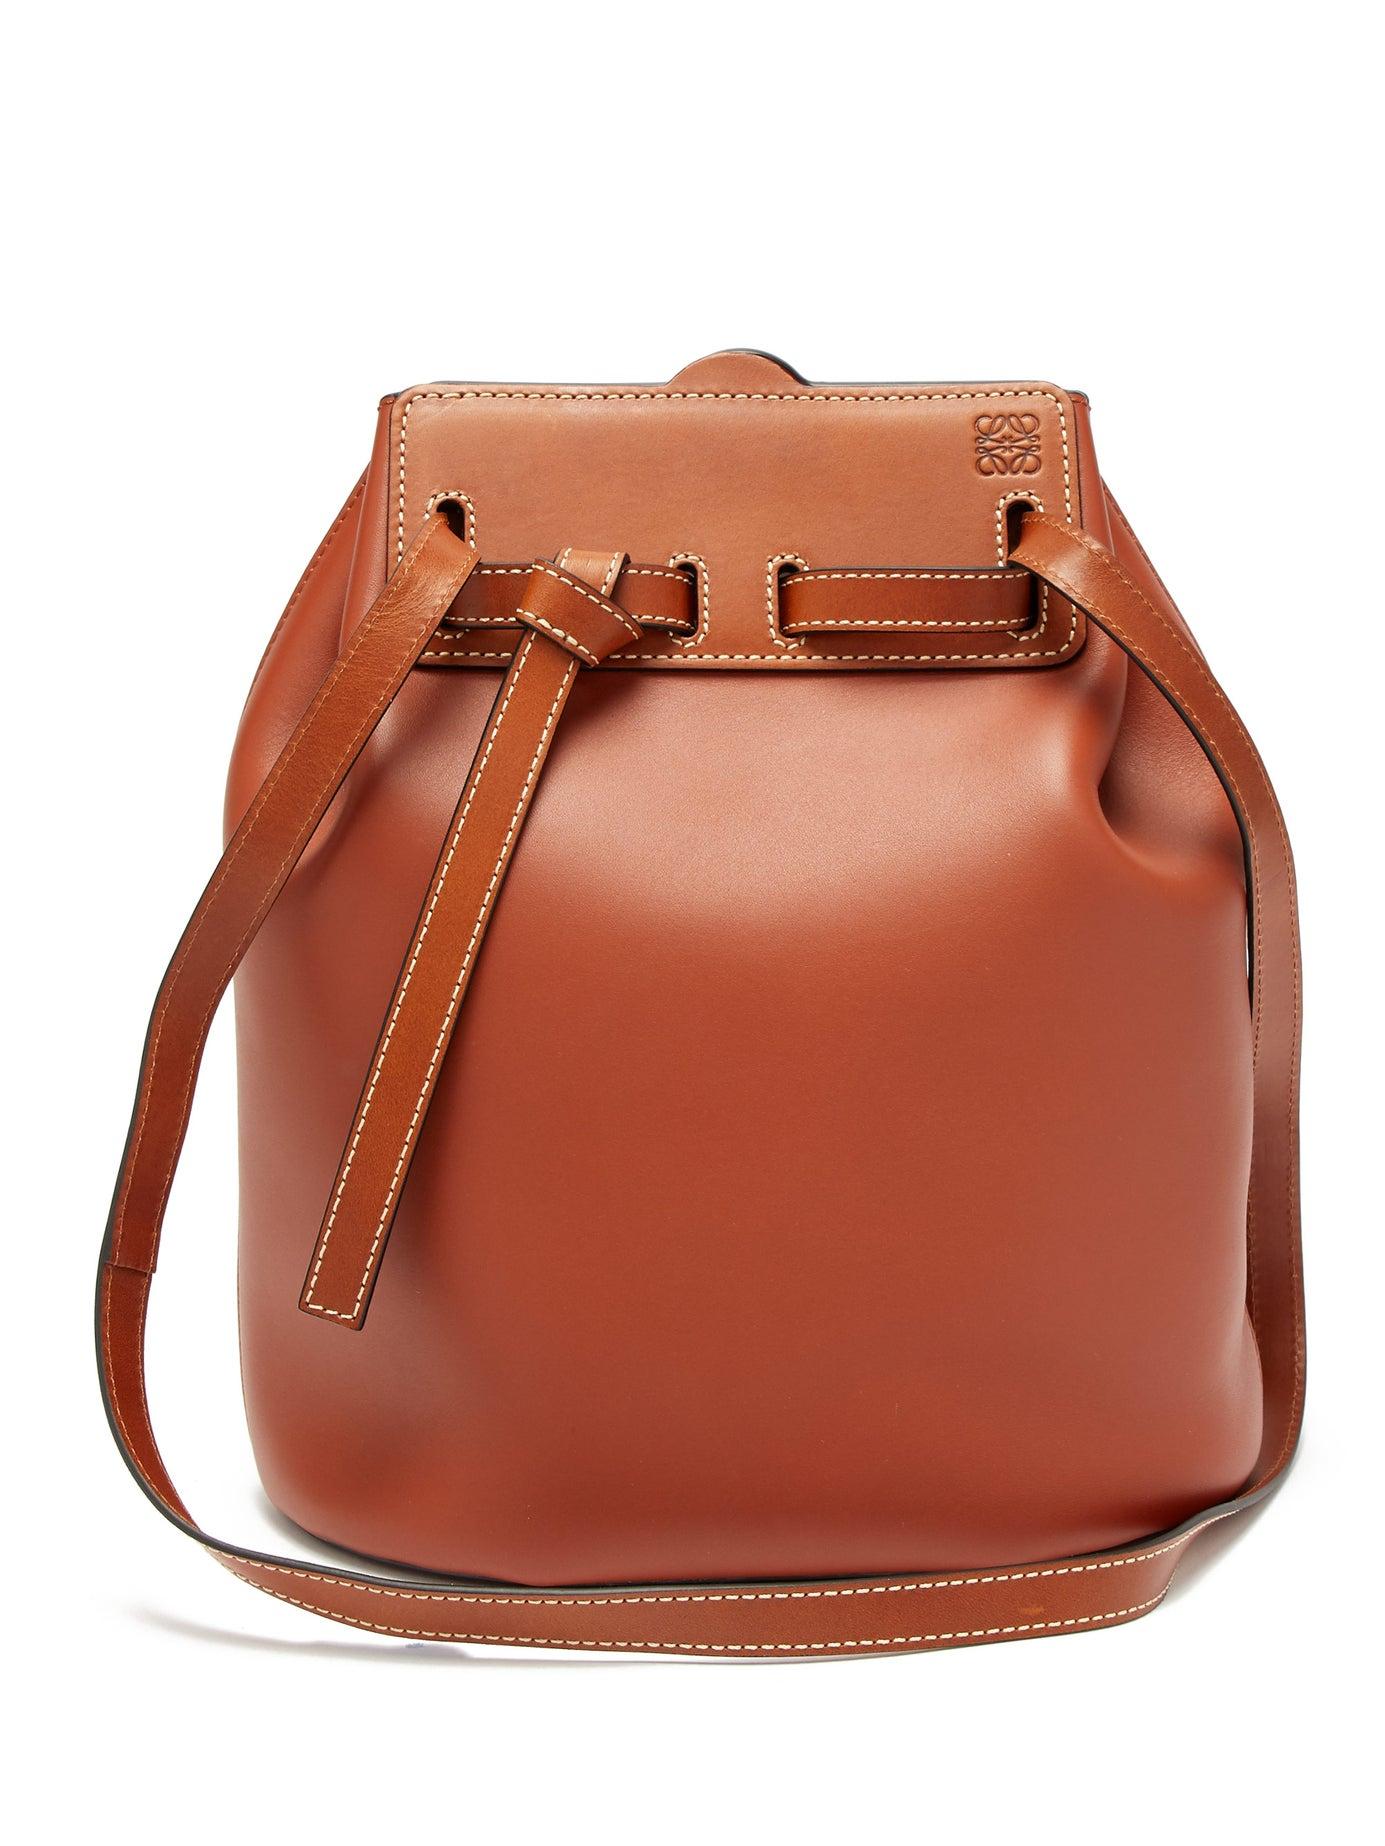 Loewe Lazo Leather Bucket Bag in Brown - Lyst